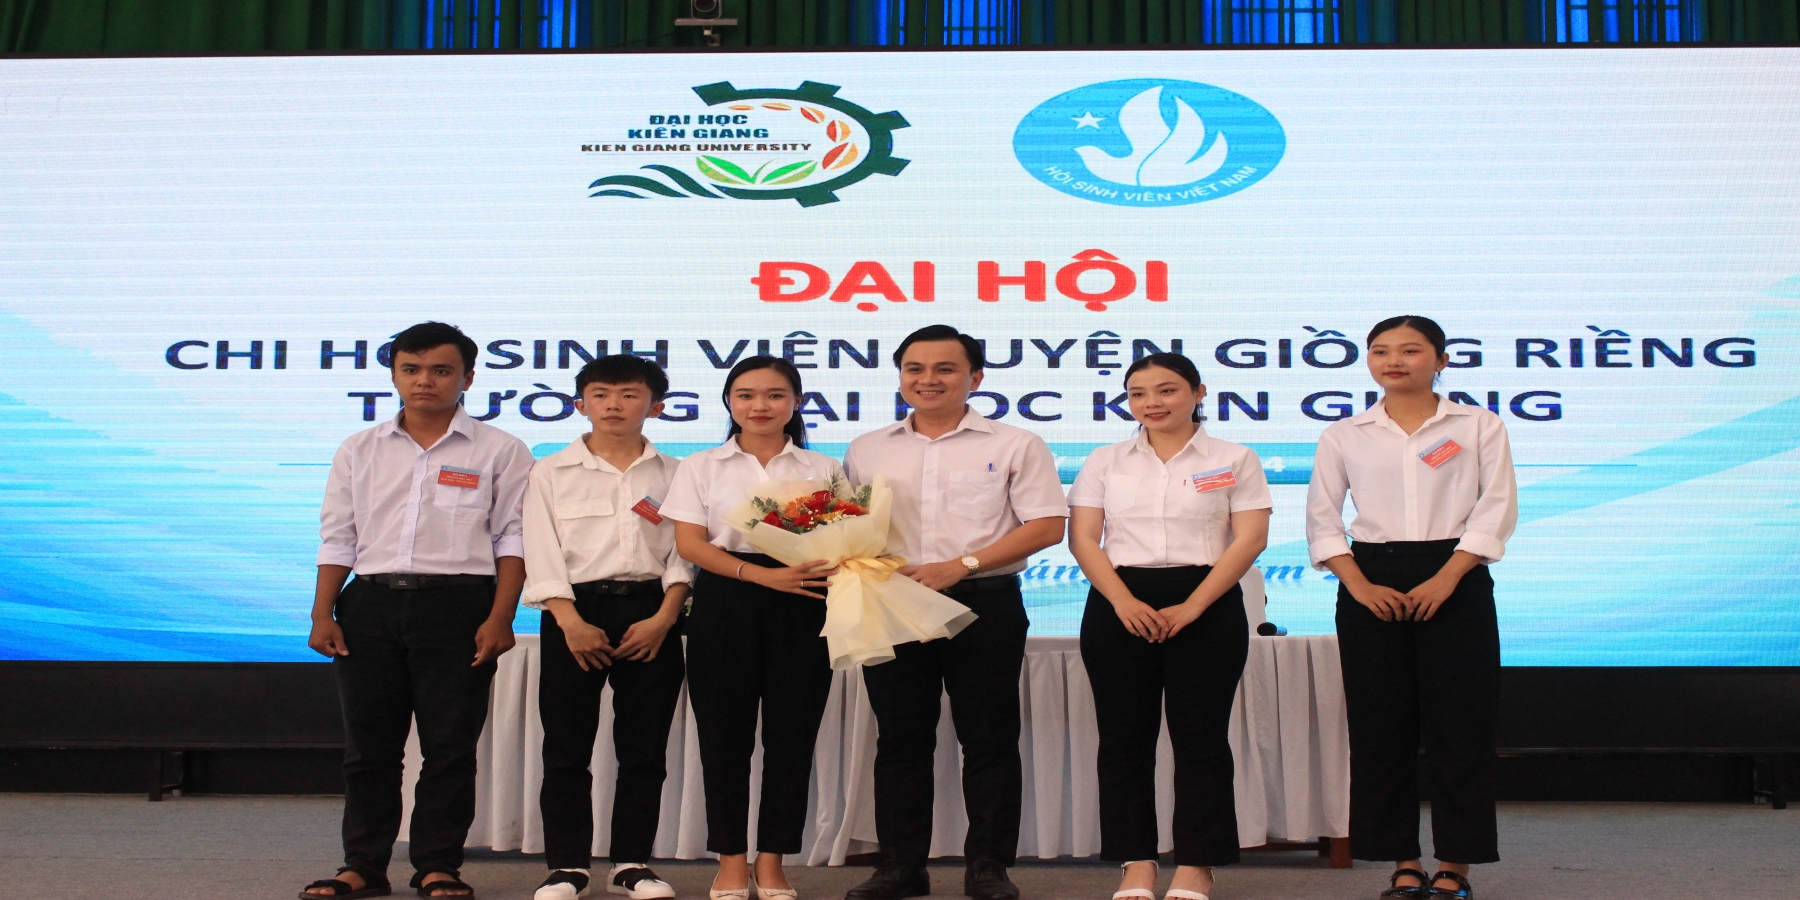 Trường Đại học Kiên Giang thành lập Chi hội sinh viên huyện Giồng Riềng